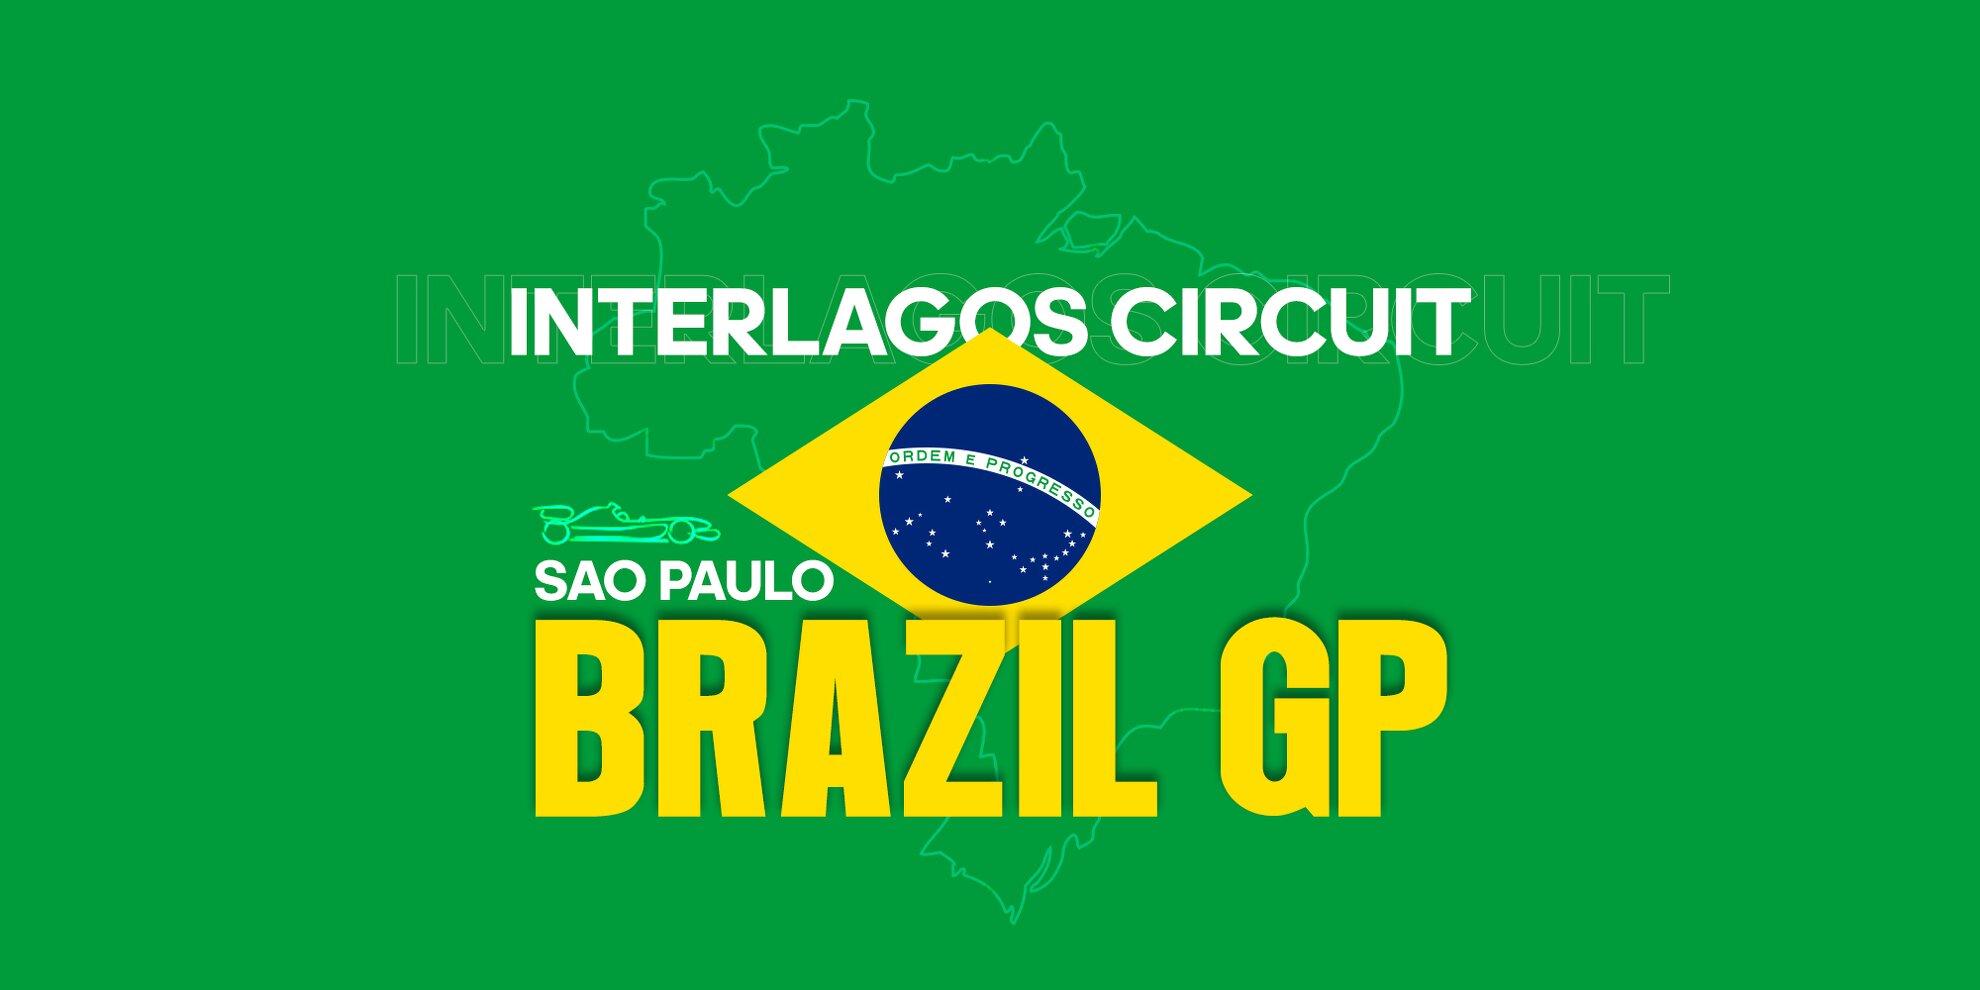 Brazil GP